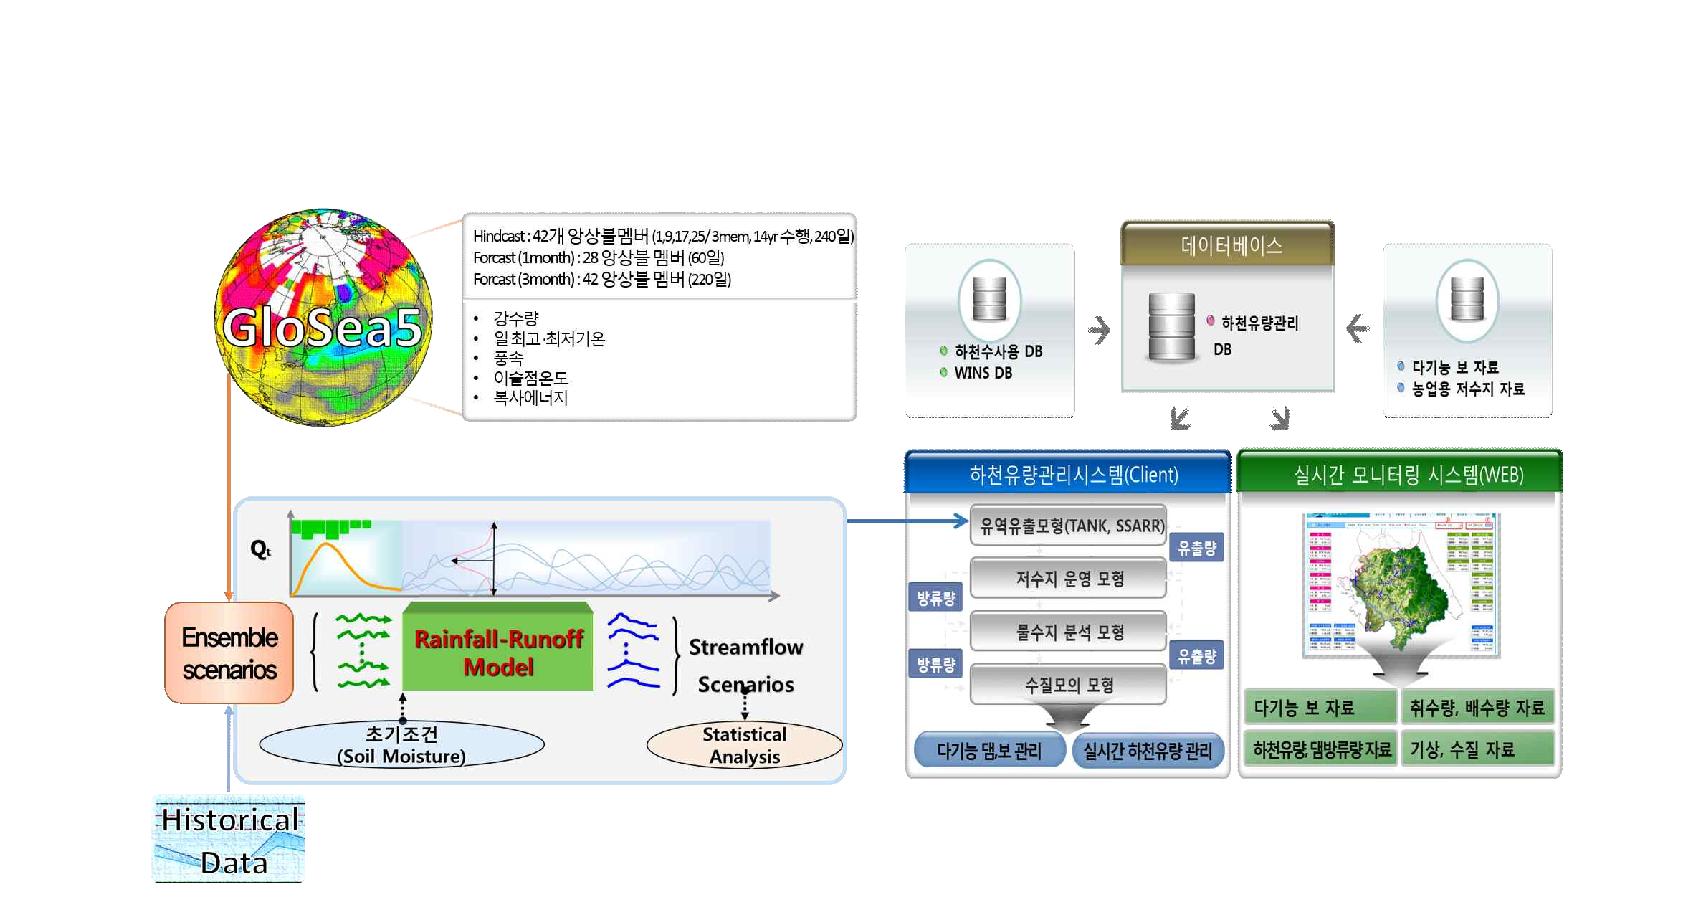 하천유량관리시스템과 연계한 GloSea5 앙상블 기반 의사결정지원 아키텍처 구성 방안